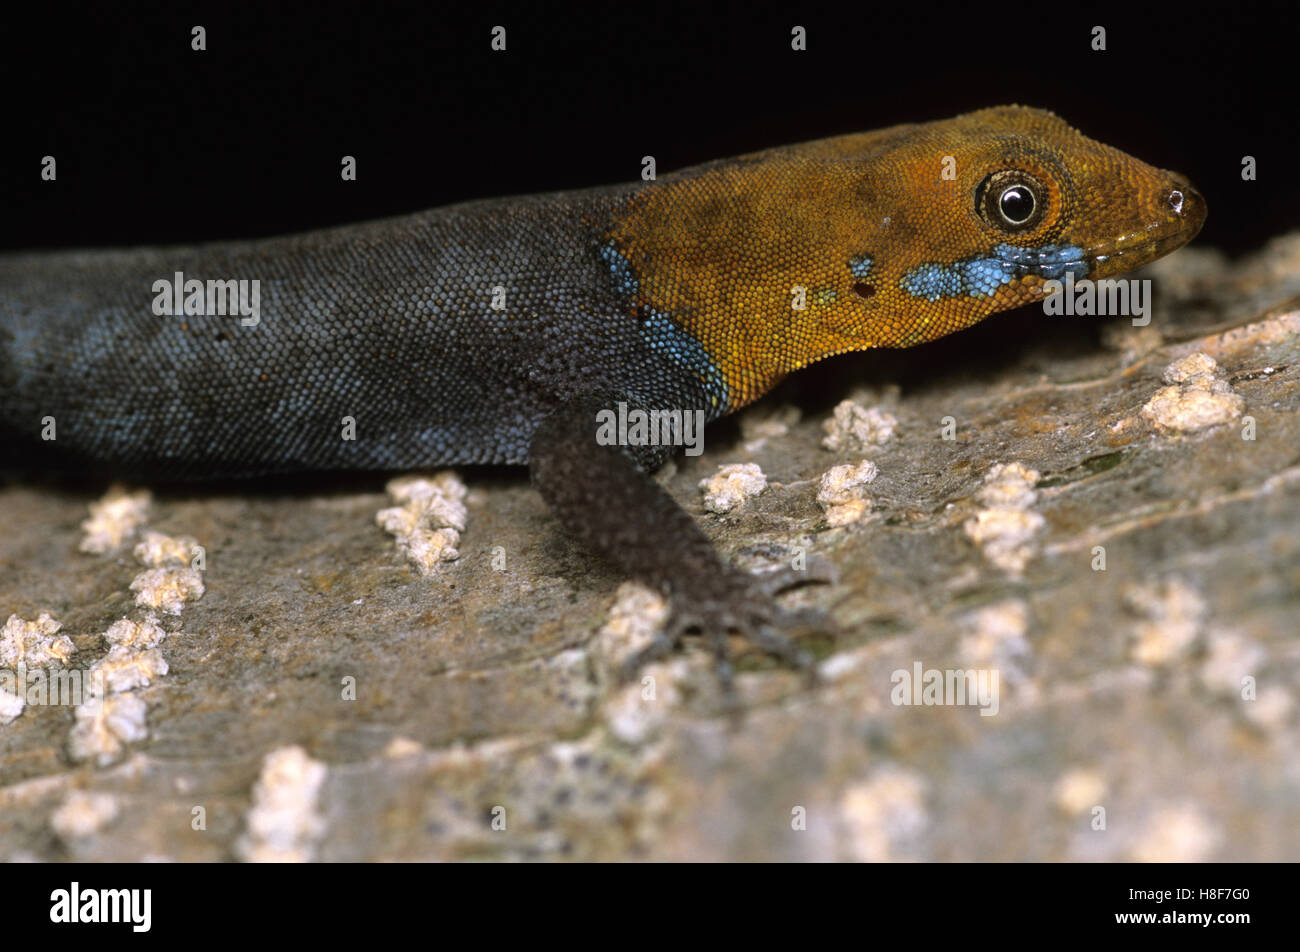 Yellow-headed gecko (Gonatodes albogularis), Nicaragua Stock Photo